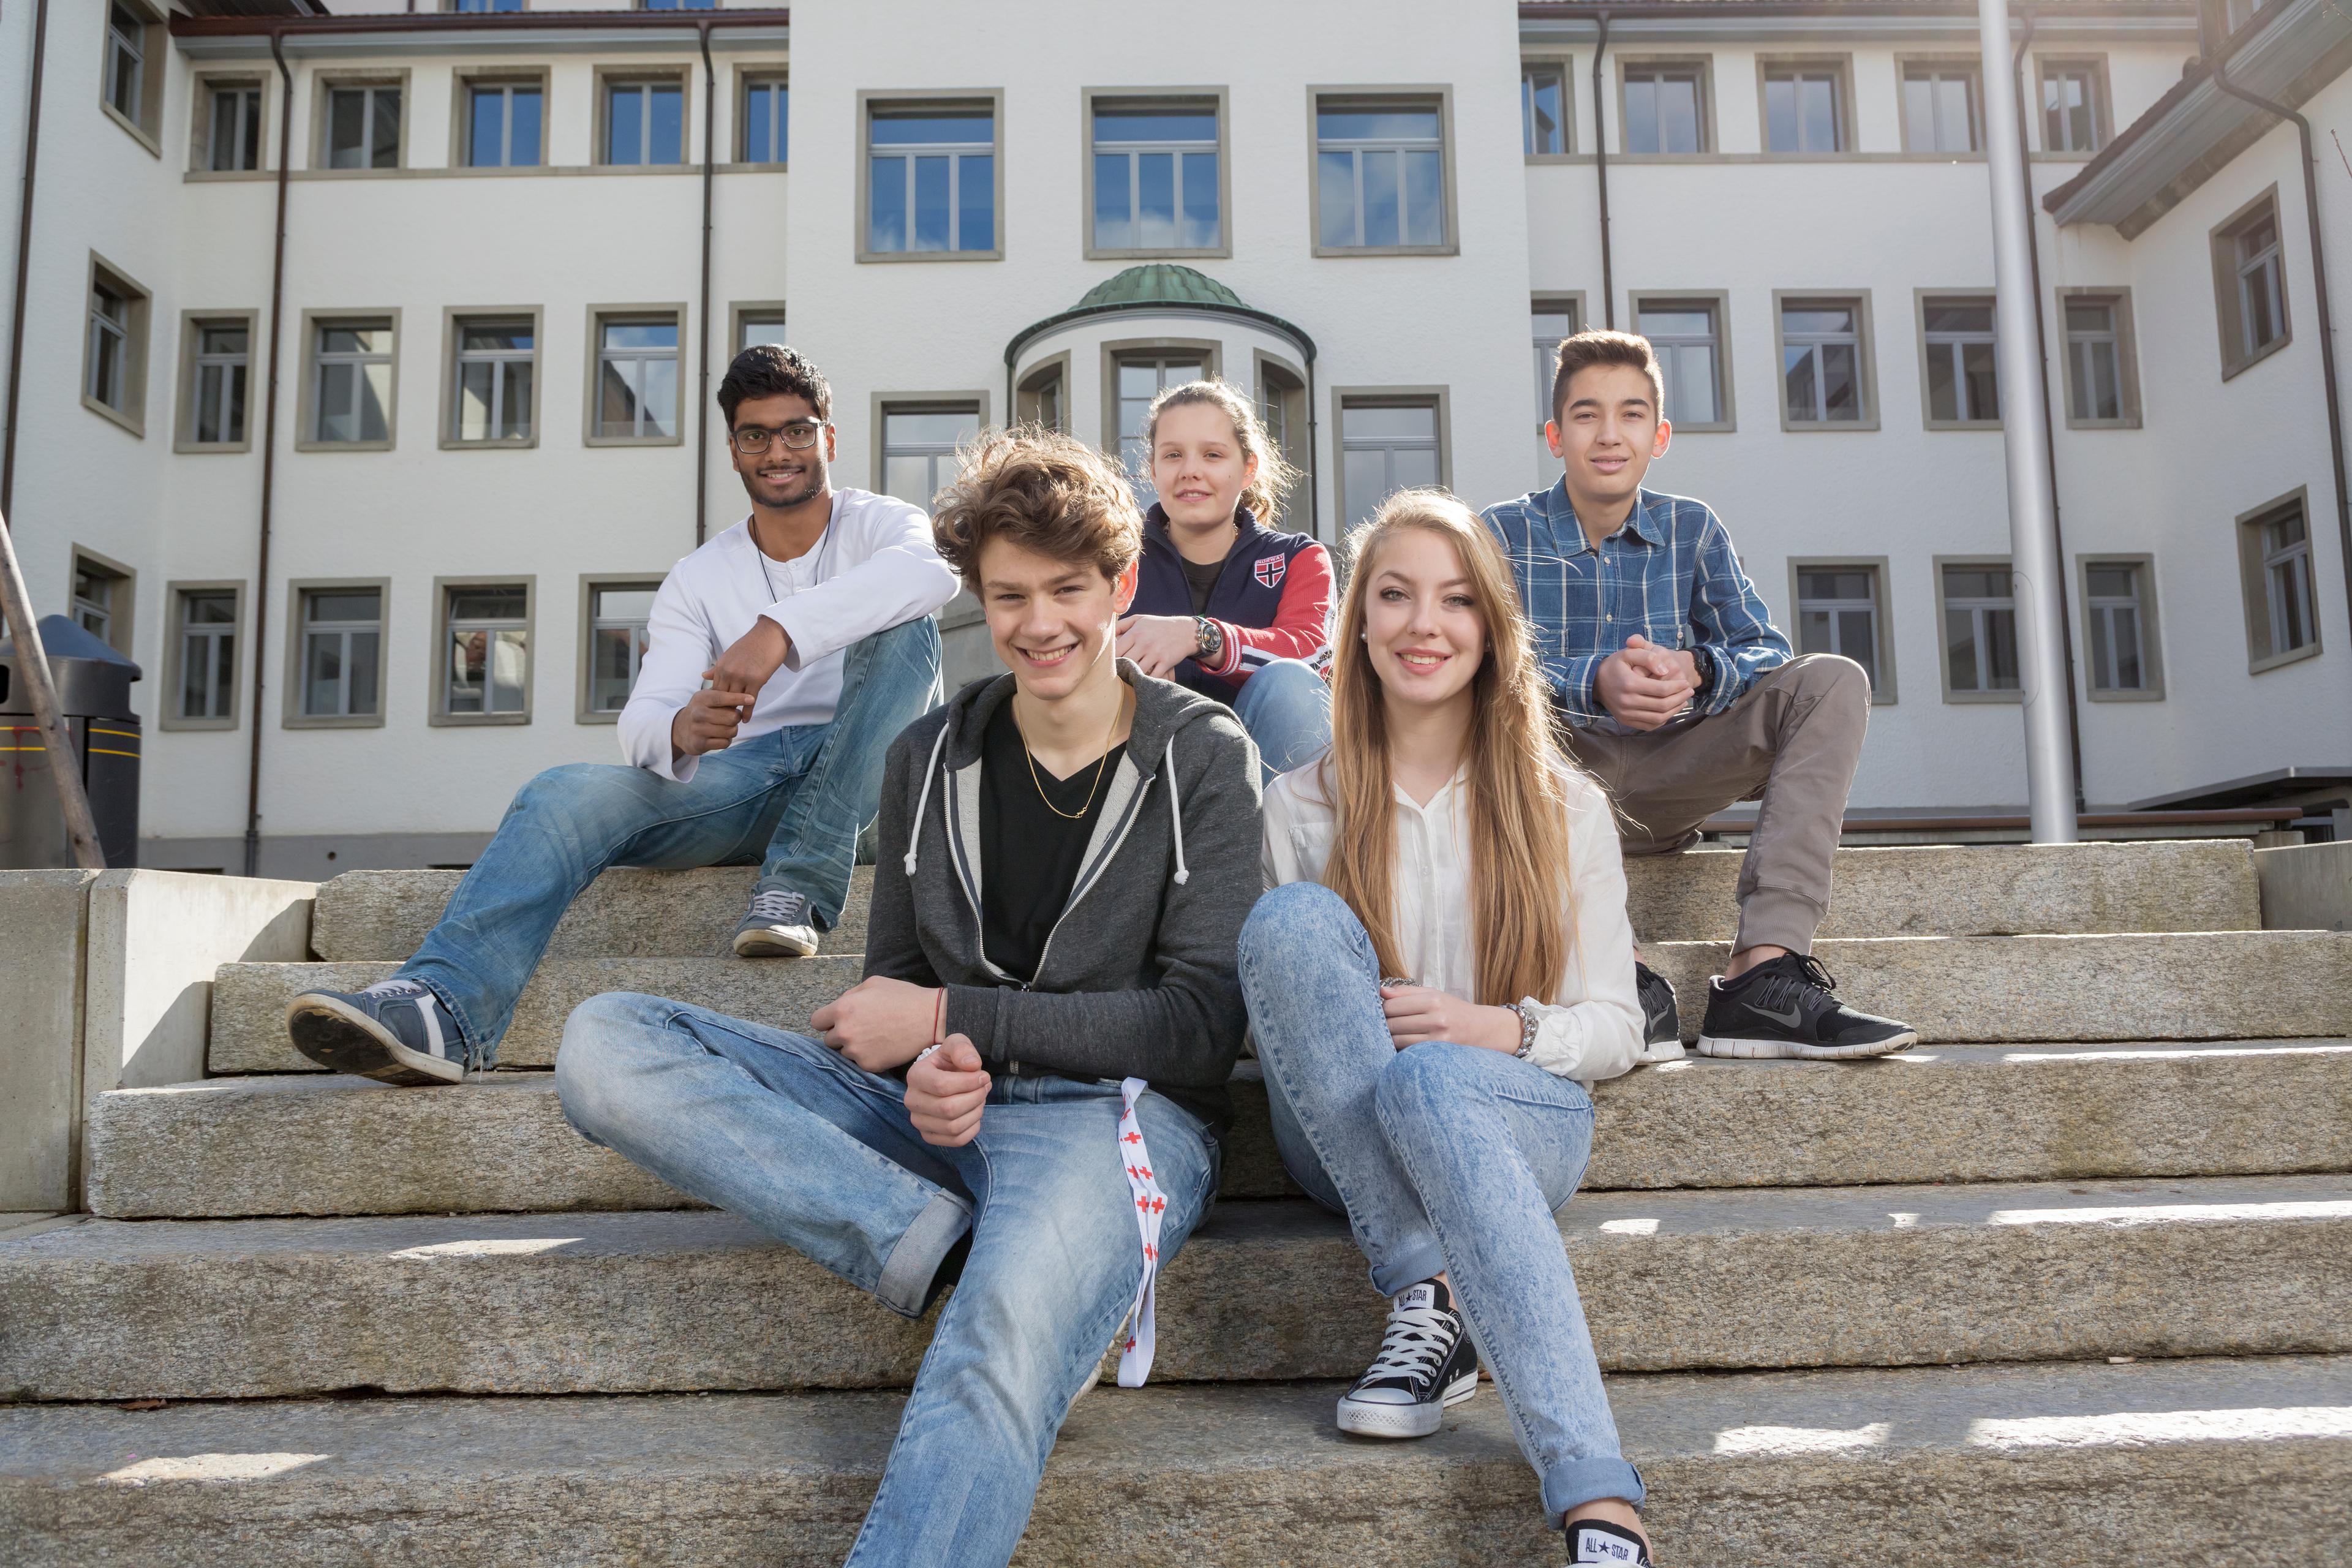 Cinque giovani su una scala, sullo sfondo un edificio scolastico. Sorridono in modo amichevole.